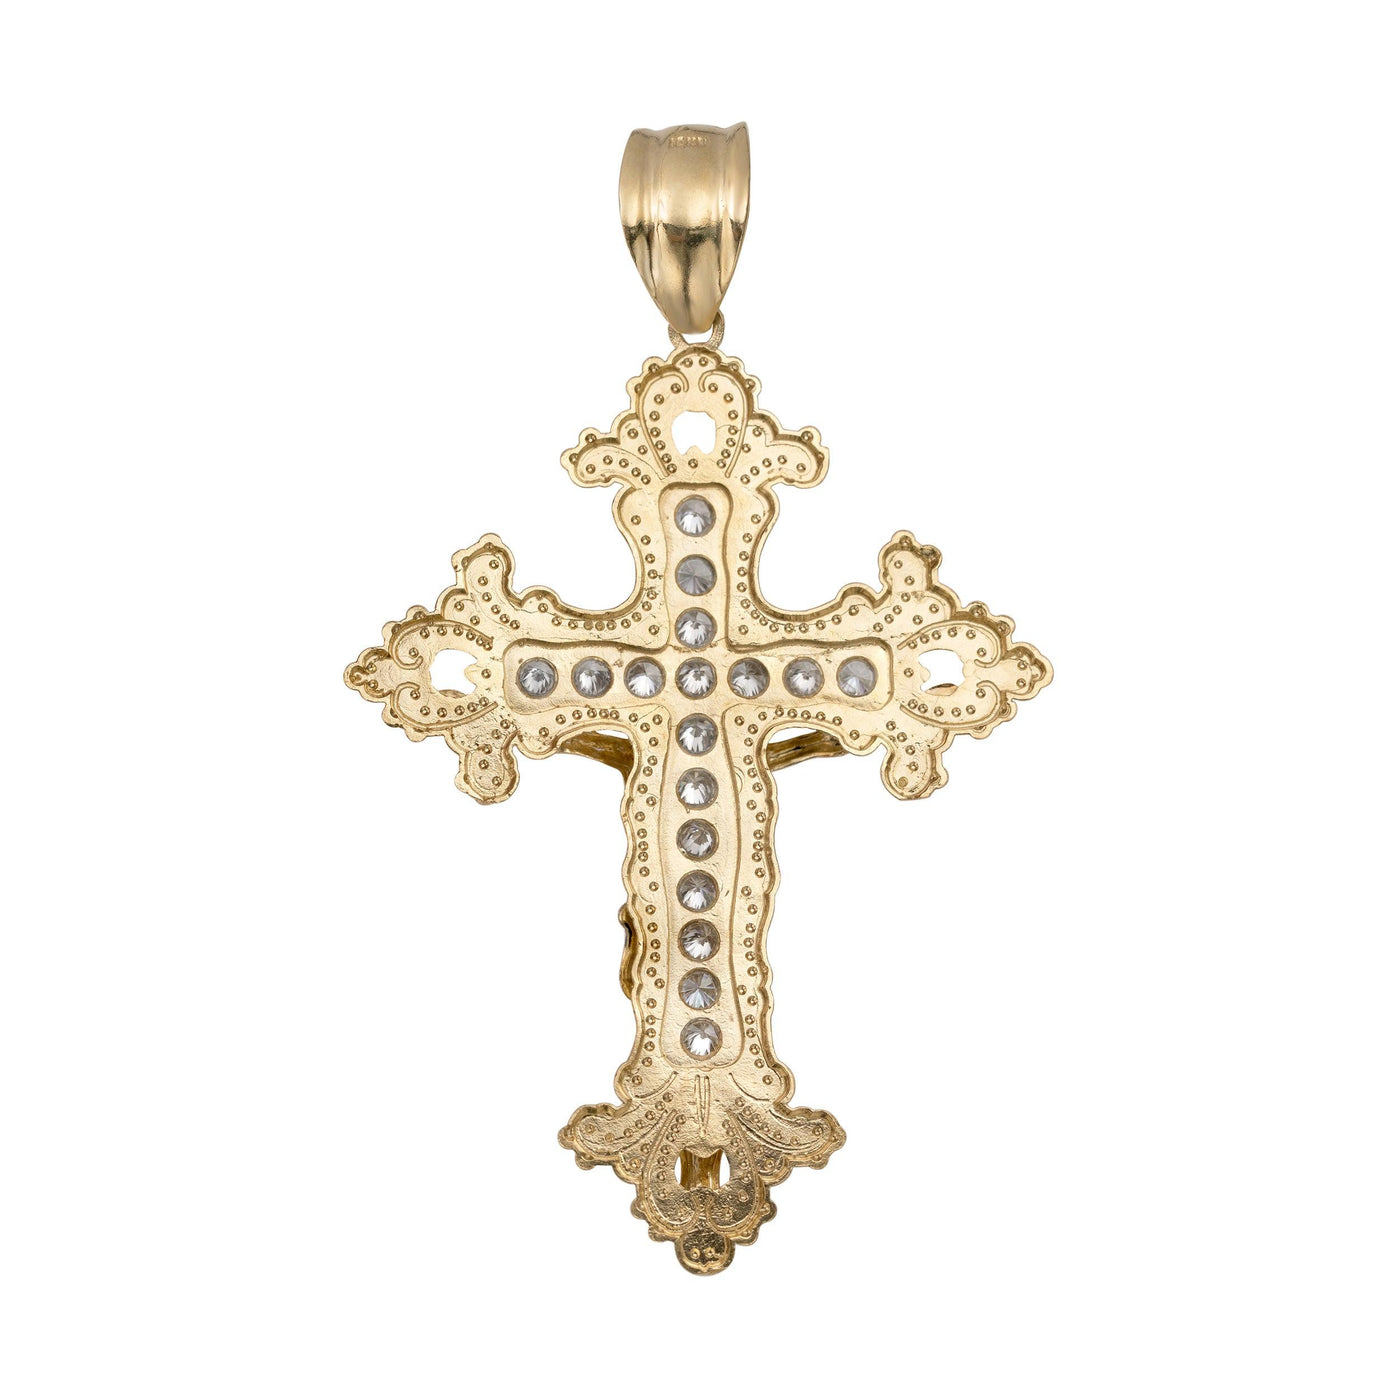 CZ Diamond-Cut Jesus Crucifix Cross Pendant 10K Yellow Gold - bayamjewelry